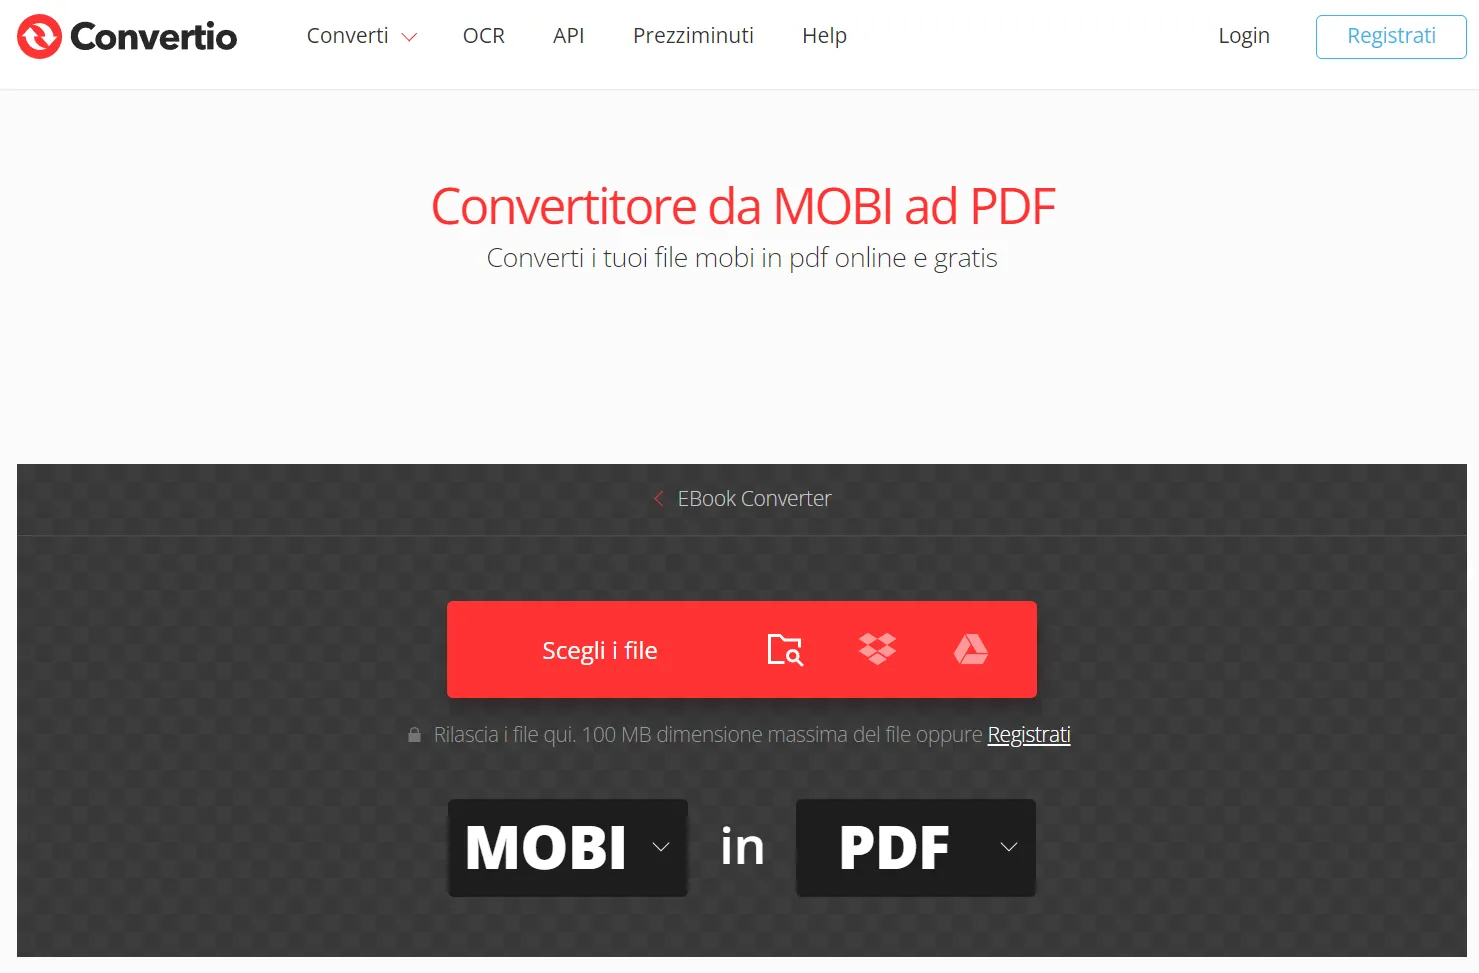 Convertire mobi in PDF con Convertio